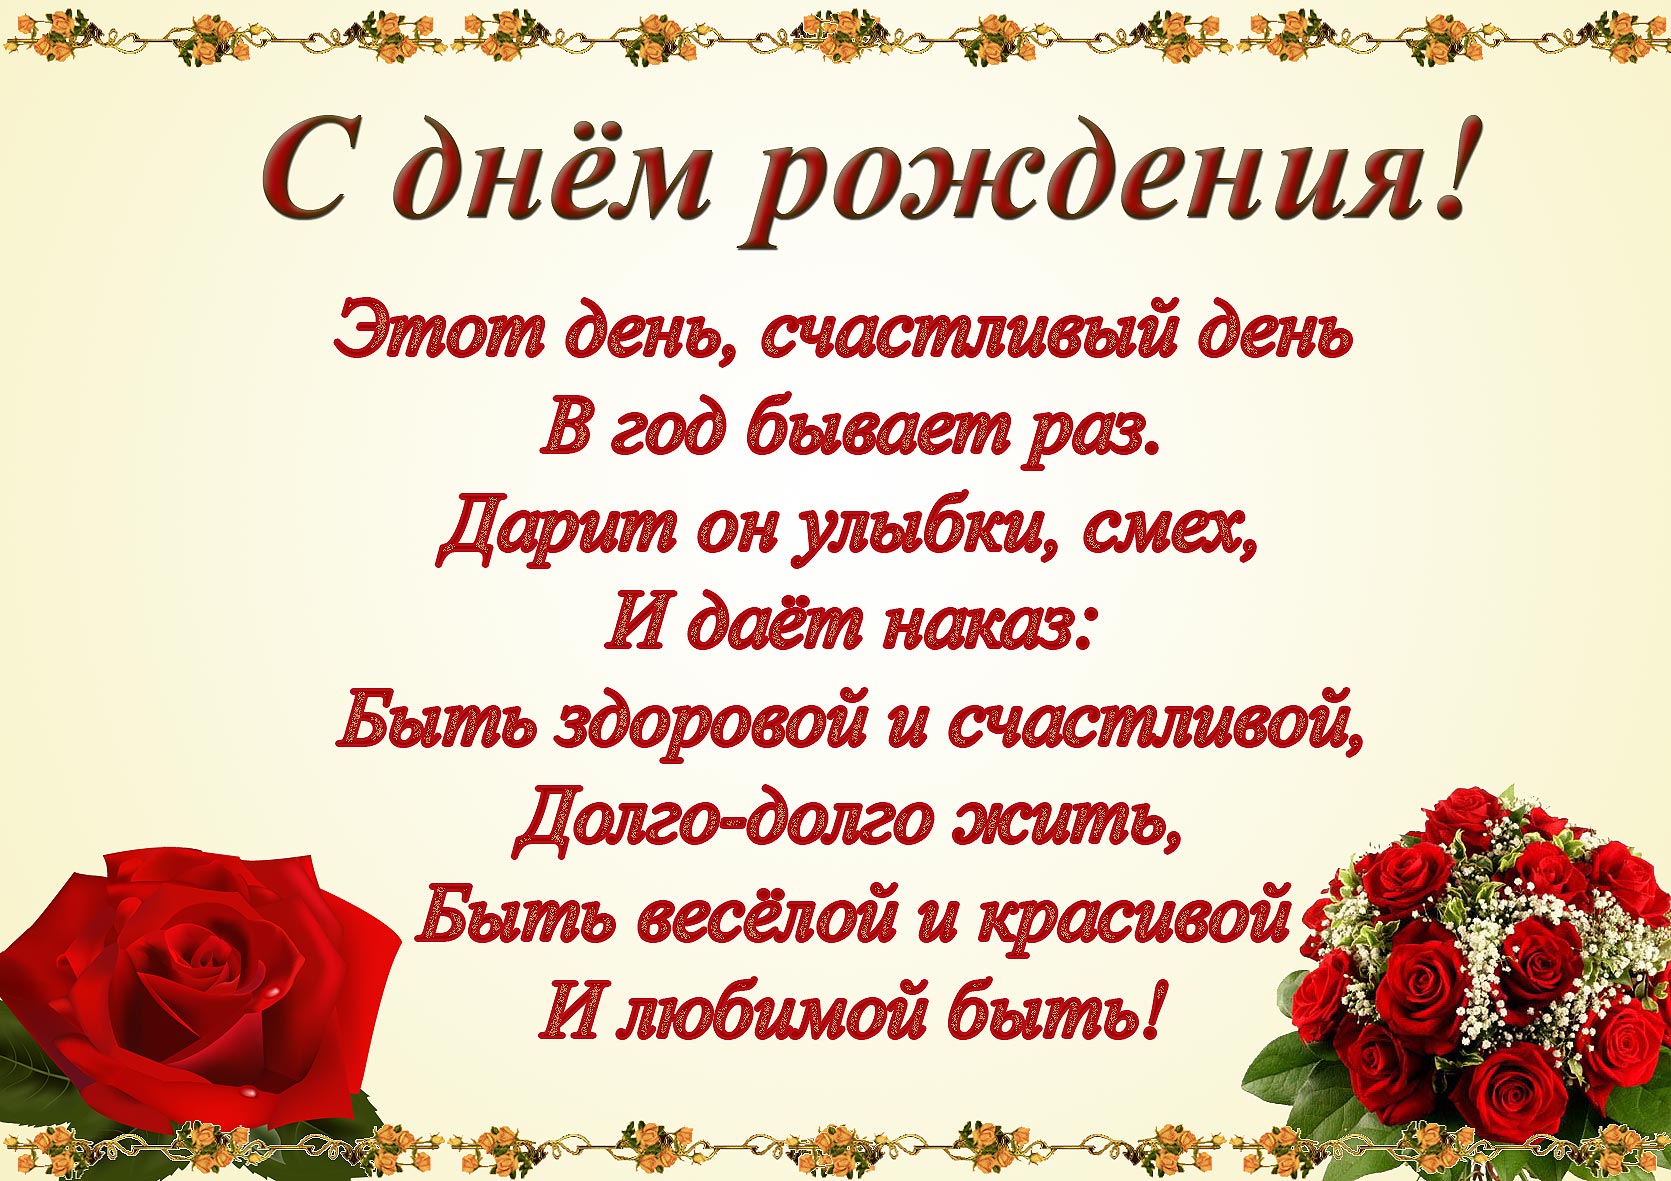 http://dreamfood.com.ua/uploads/forum/images/1359119129.jpg